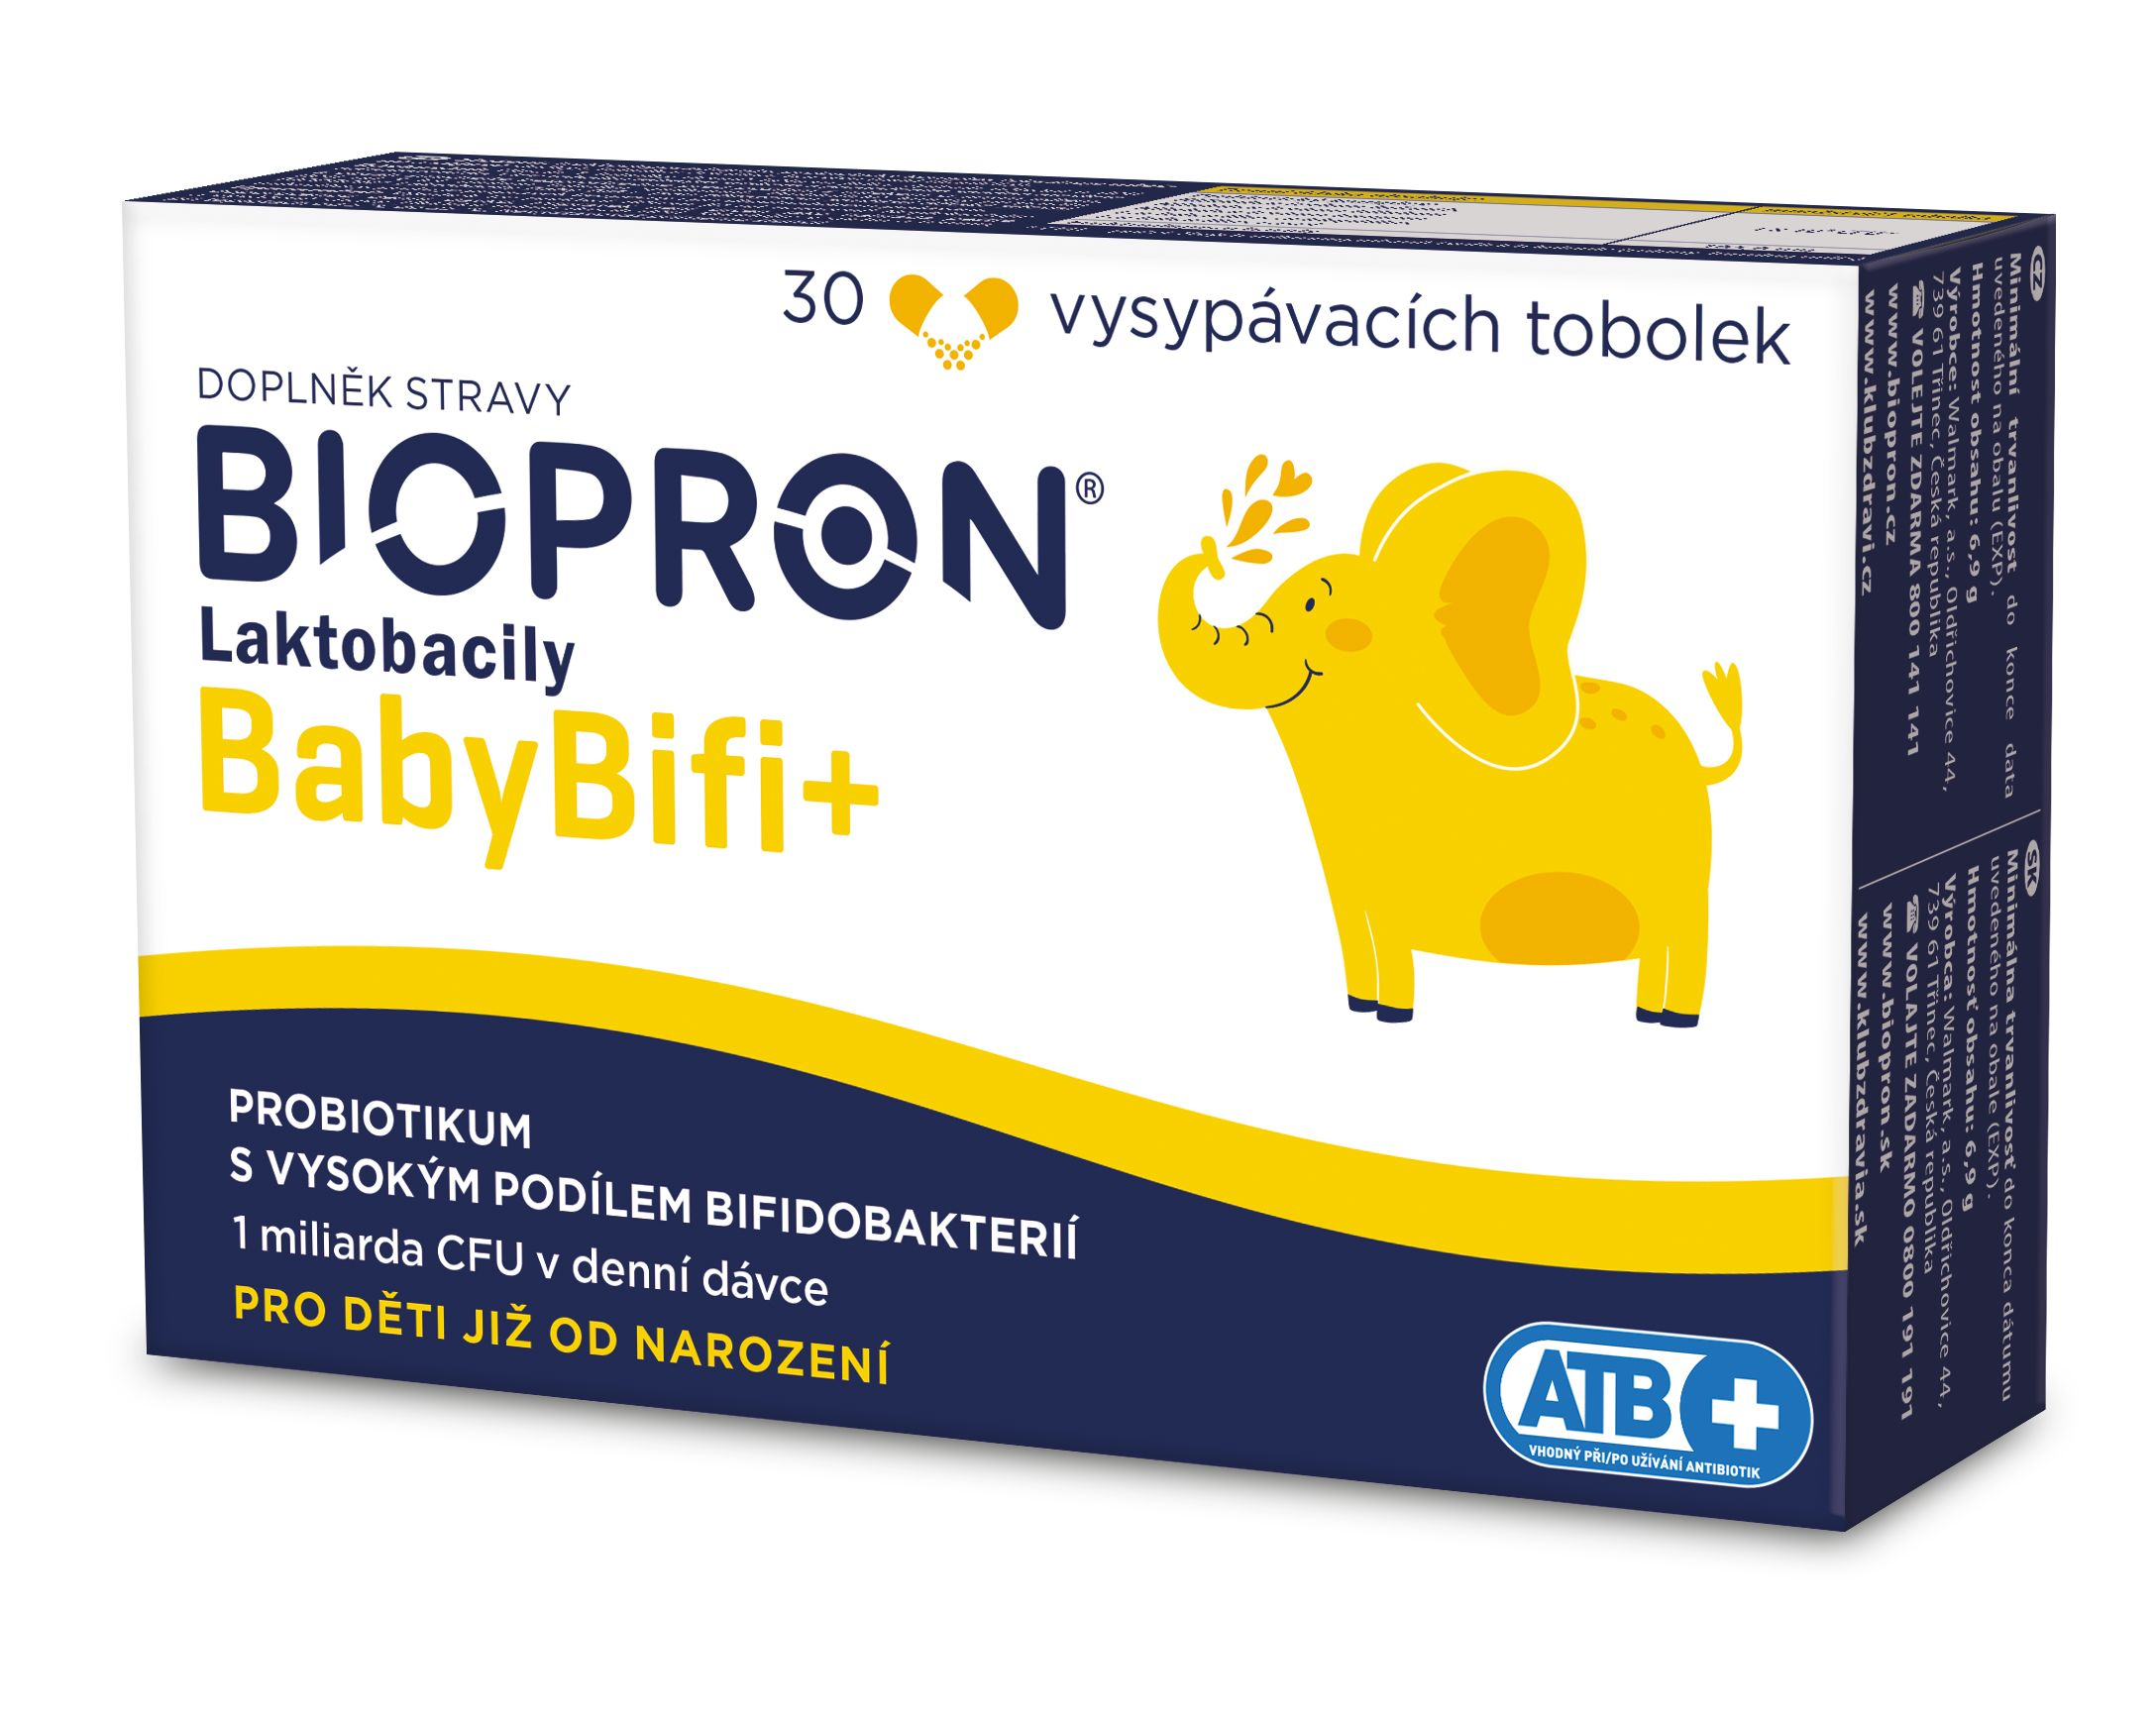 Biopron Laktobacily BabyBifi+ 30 vysypávacích tobolek Biopron